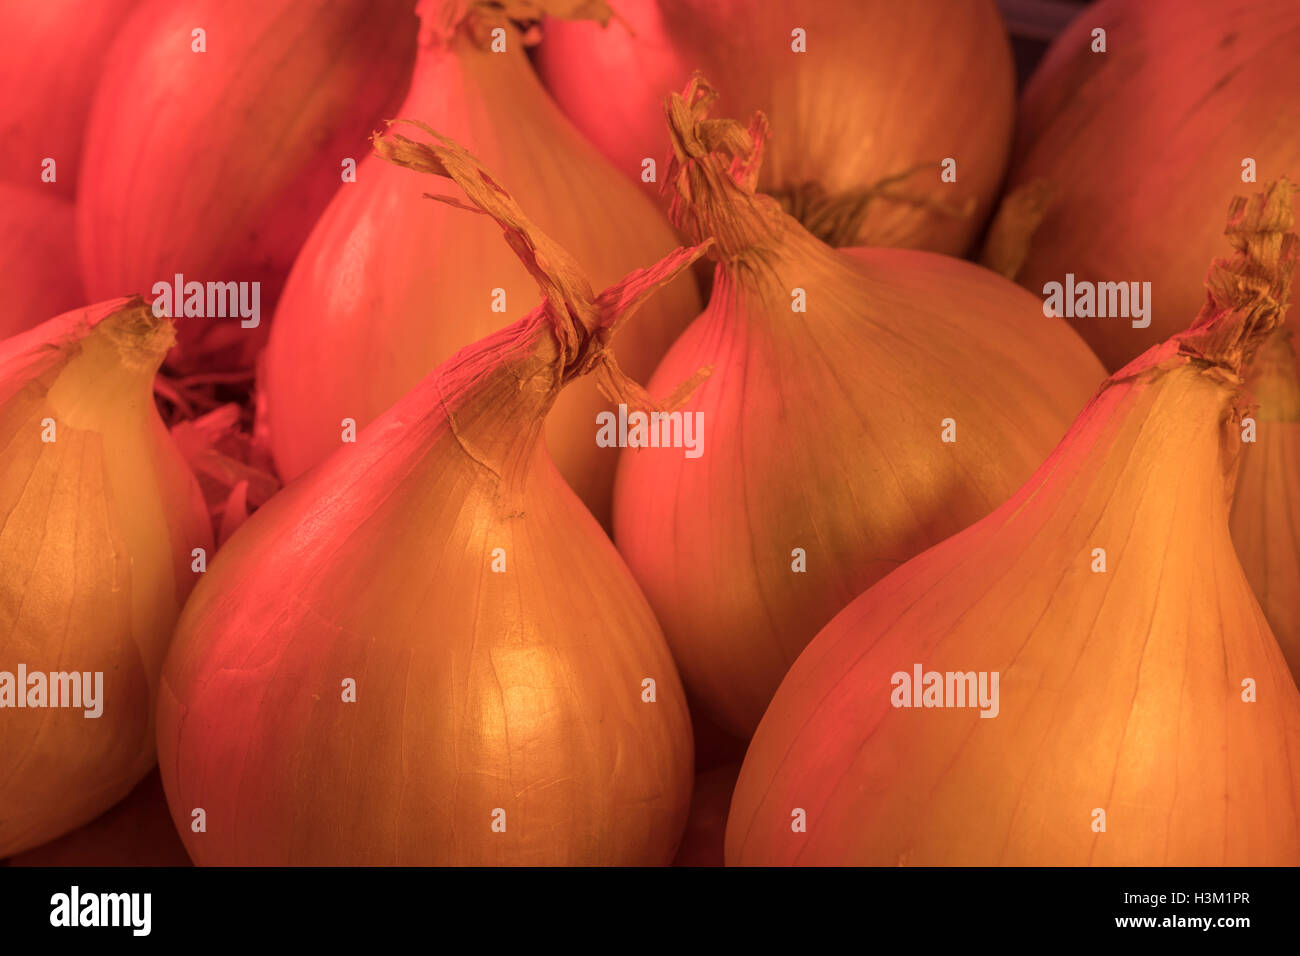 Kleine Zwiebelchen Schuß in warmen, sanftes Licht. Offensichtlich in der Küche verwendet, sondern auch Metapher für "Onion Routing' auf der Dunklen Web/Darknet/hacking Stockfoto